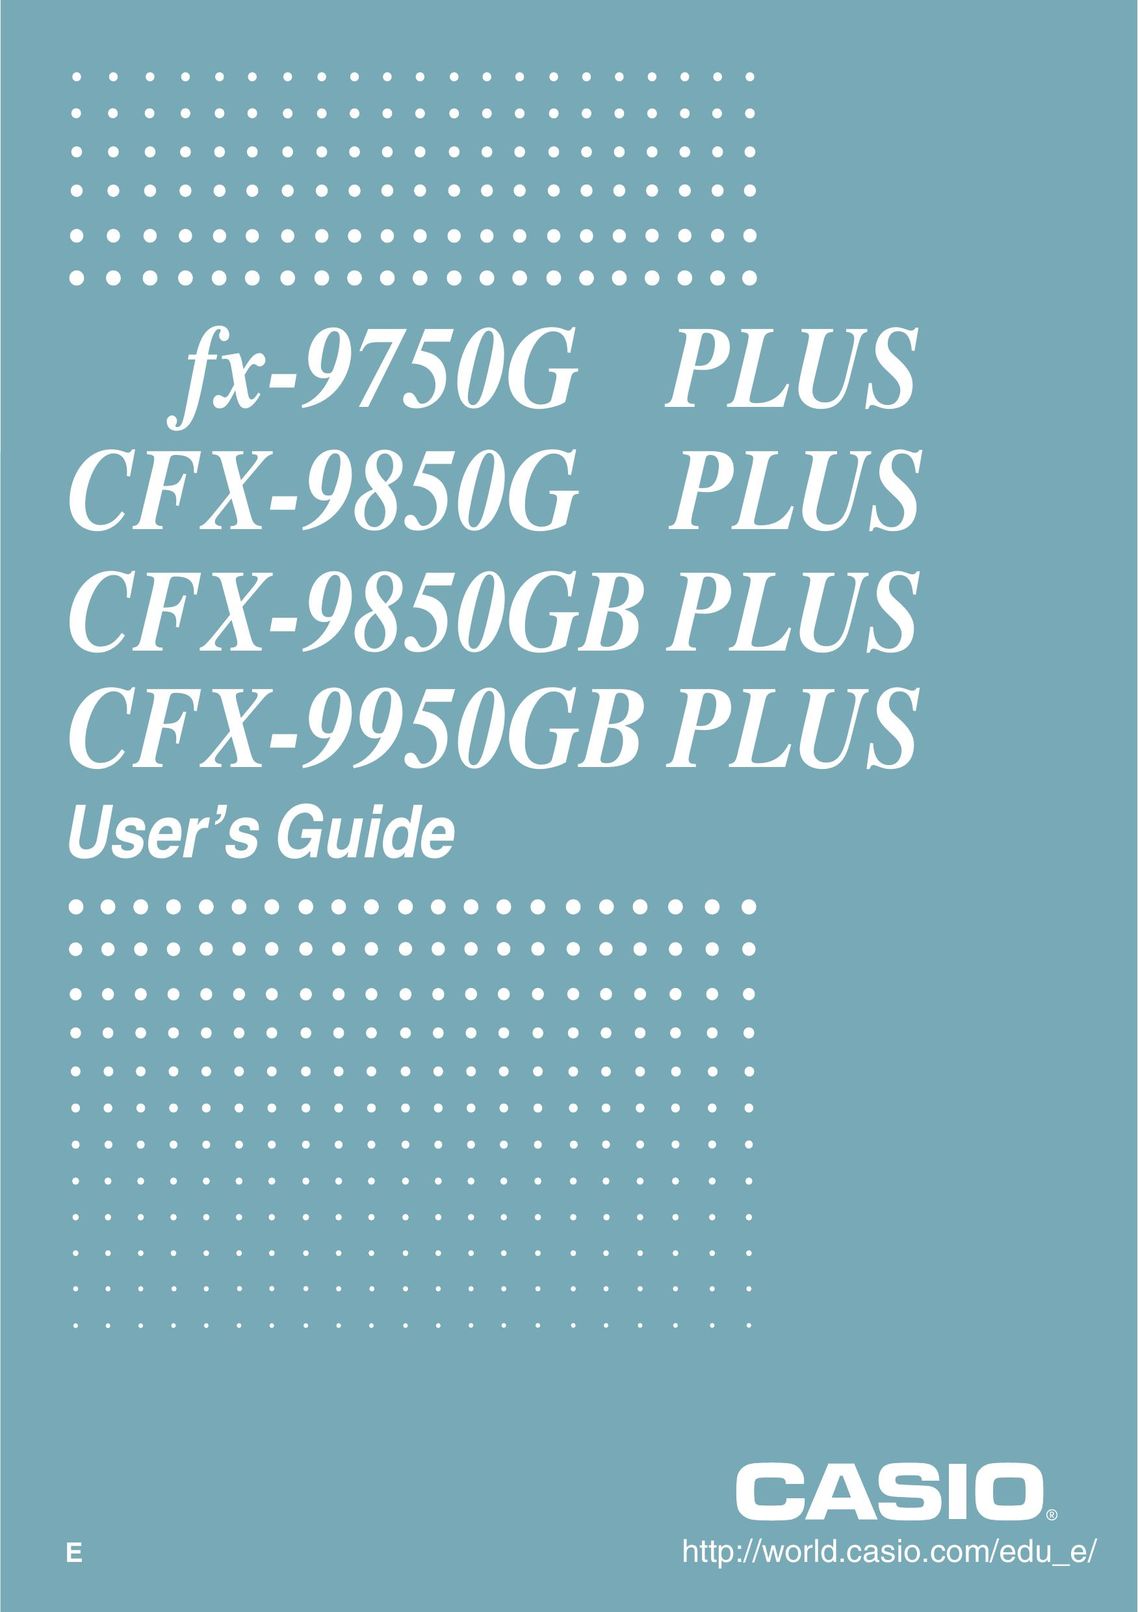 Casio CFX-9950GB PLUS Calculator User Manual